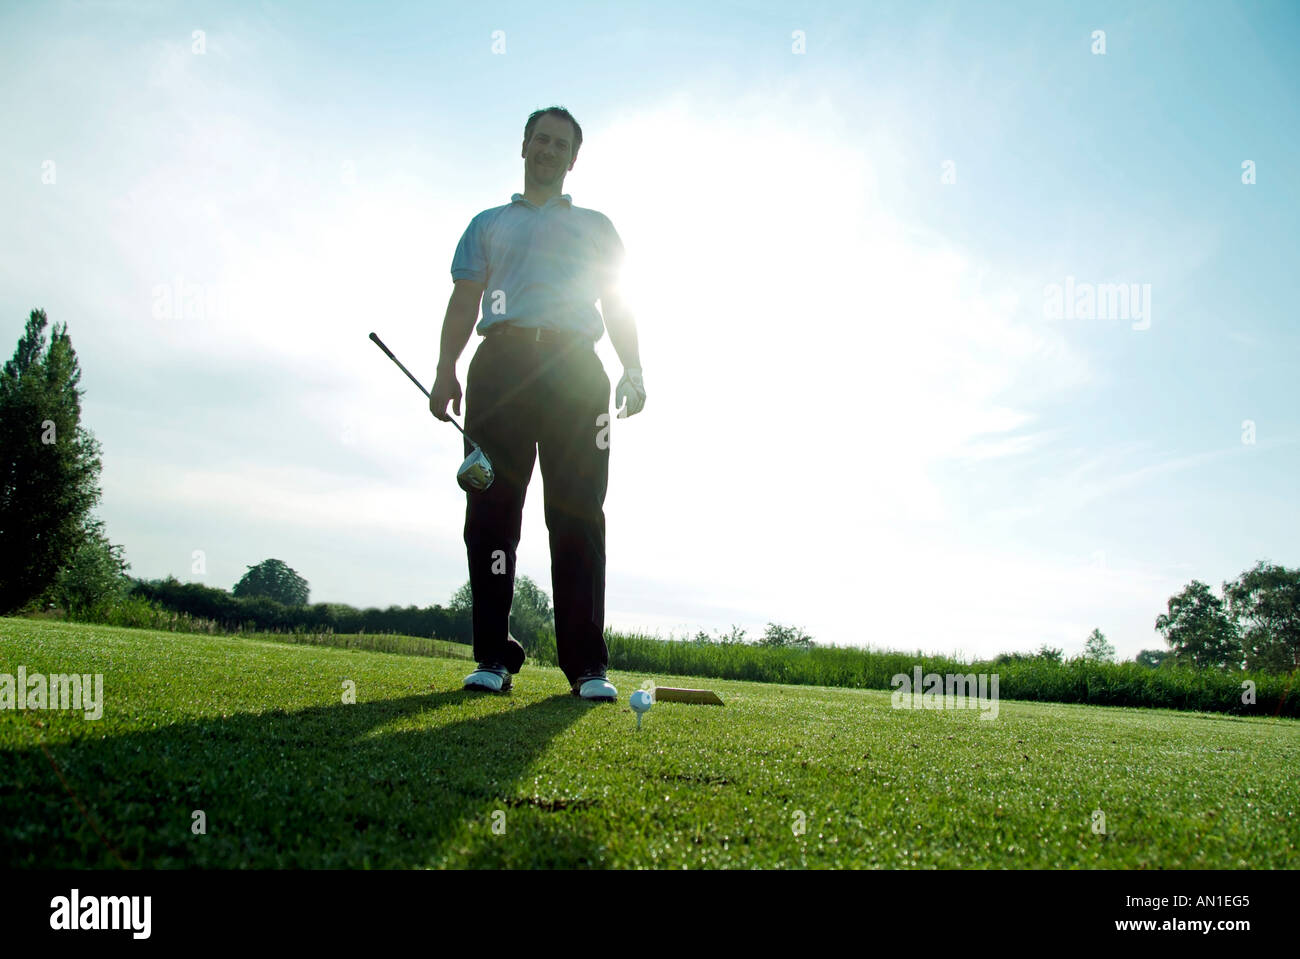 Golf Golf Golf, close-up d'un joueur de golf frapper sa balle au premier trou, le contre-jour Banque D'Images